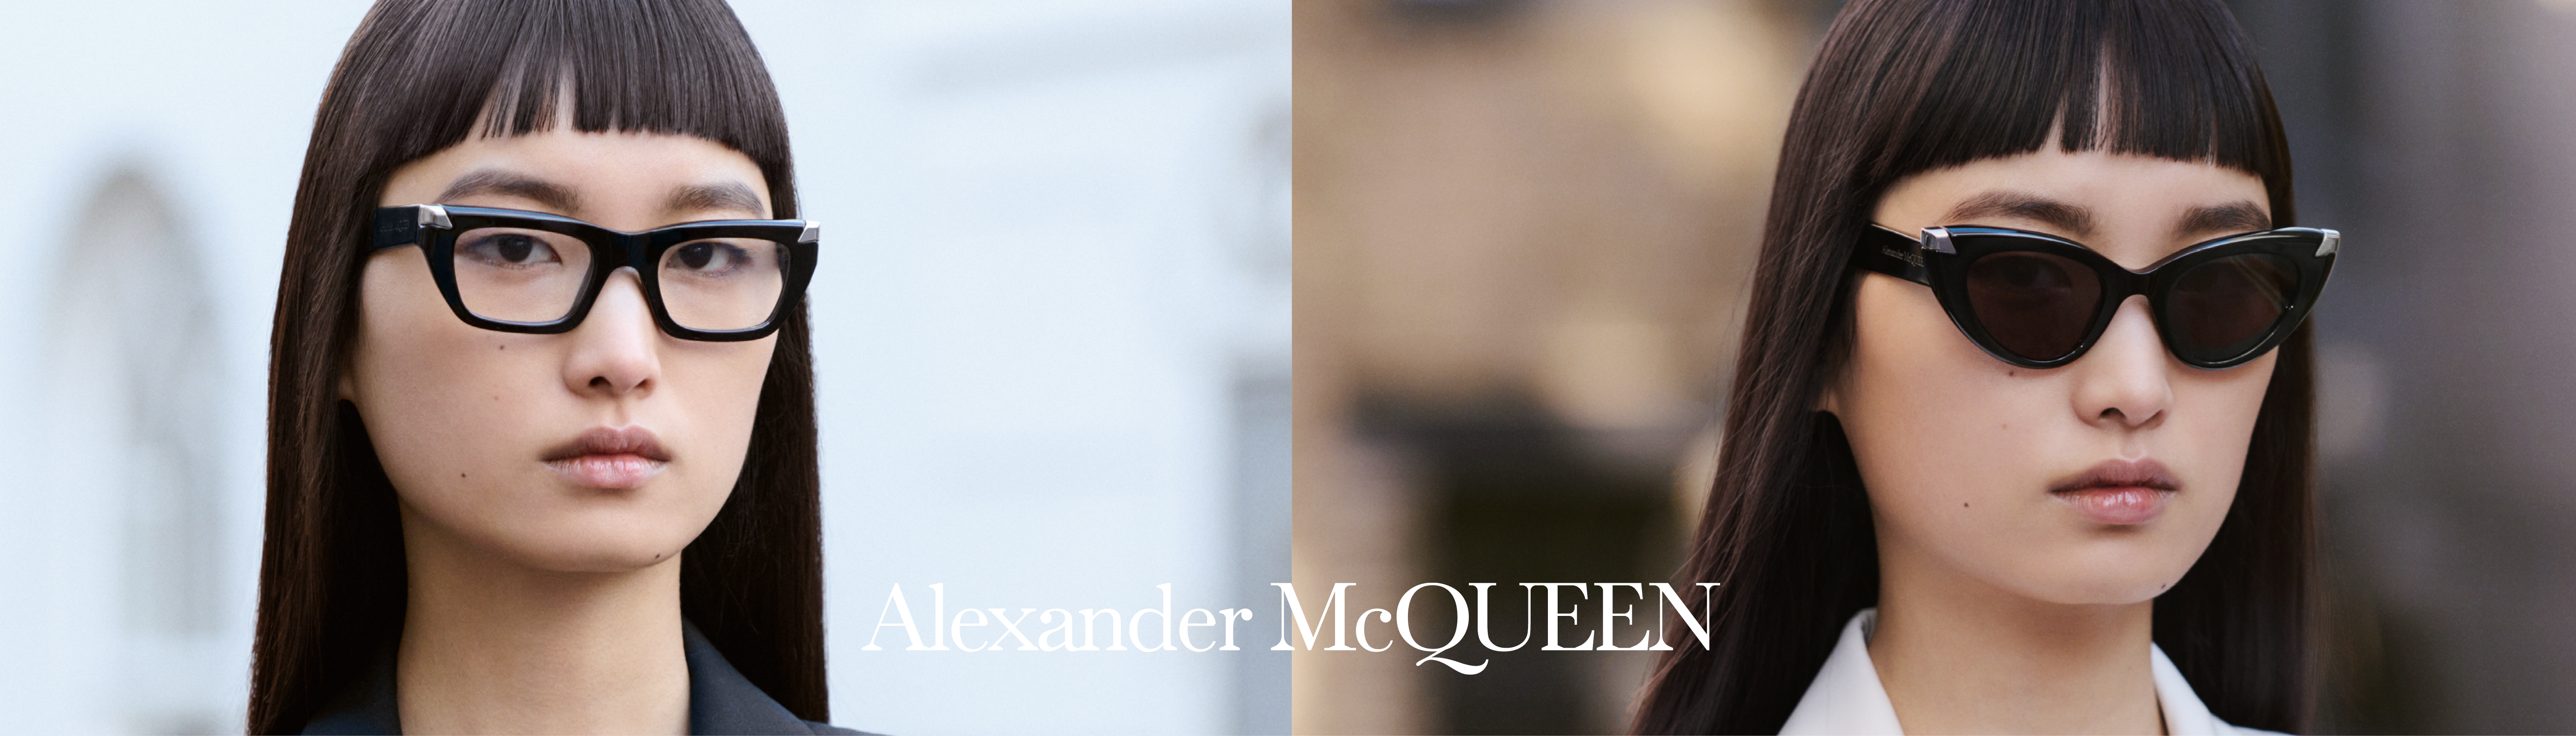 55 Best ALEXANDER MCQUEEN OUTFIT ideas